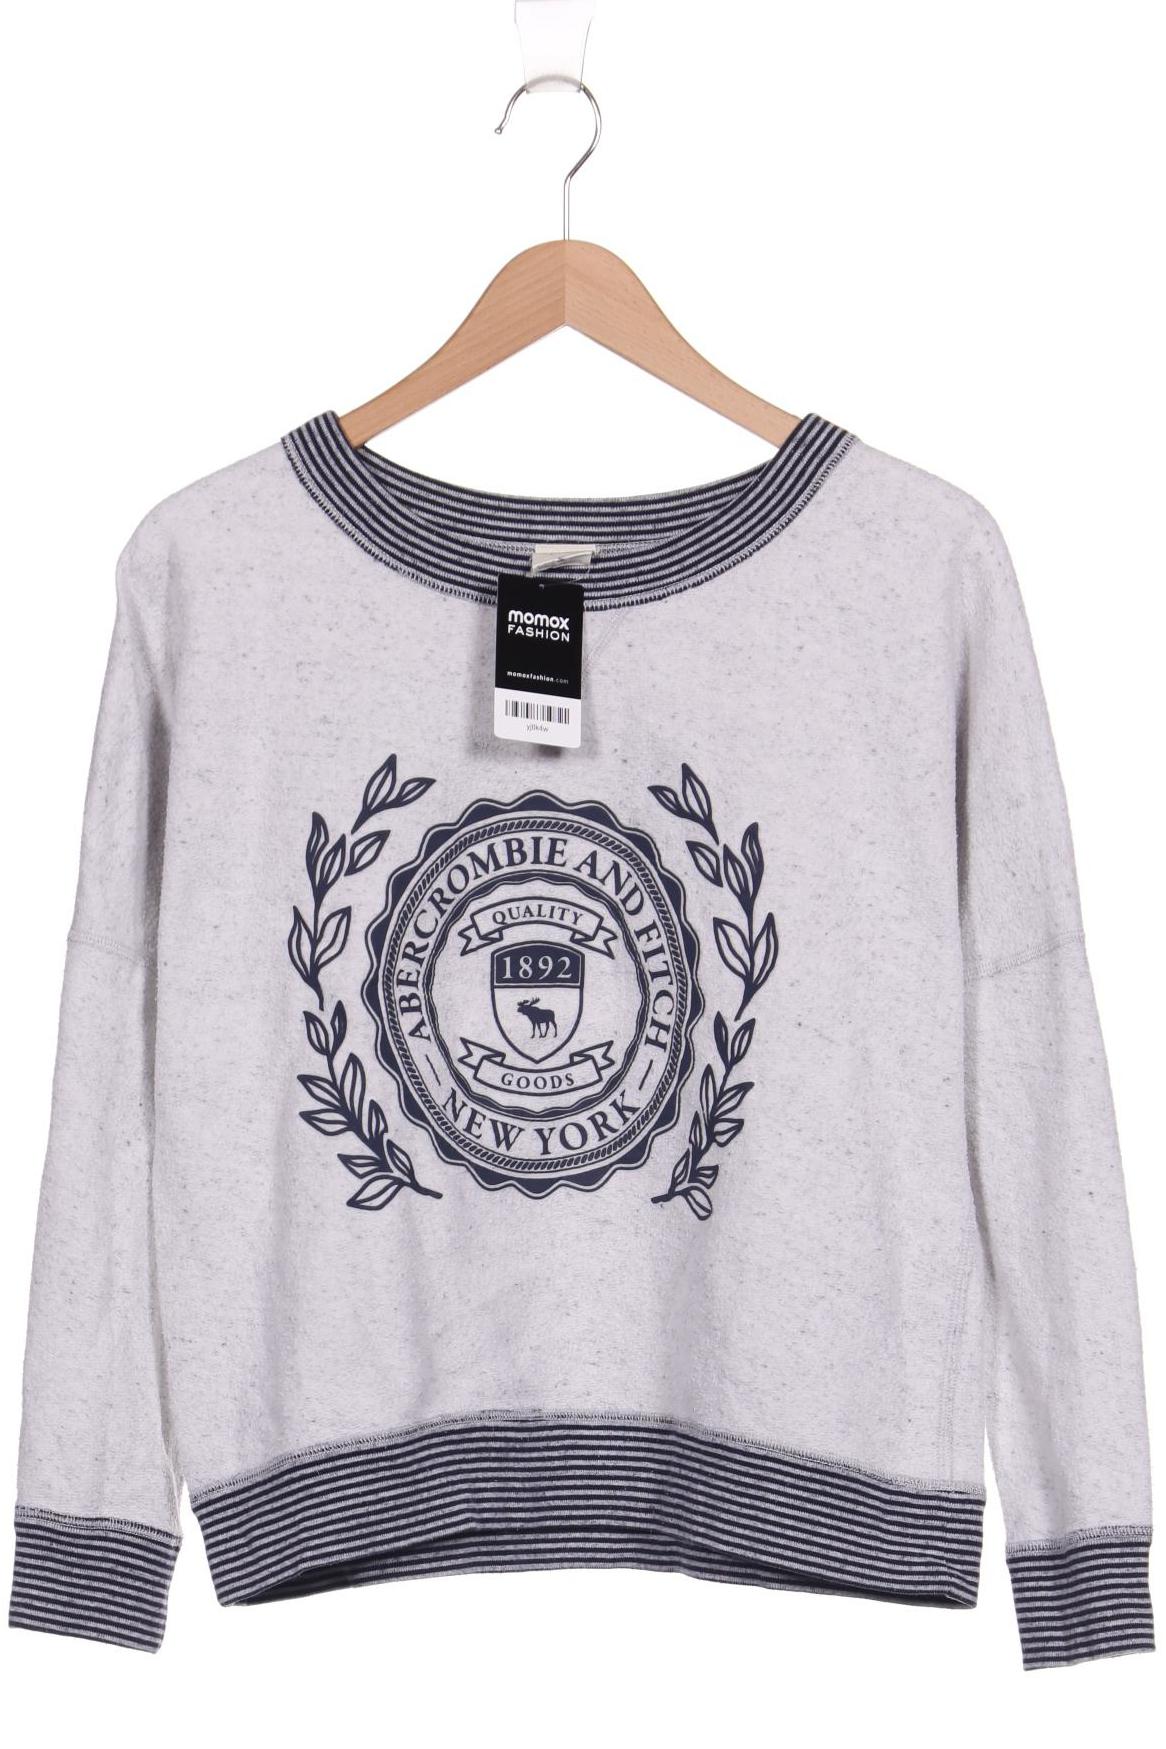 Abercrombie & Fitch Damen Sweatshirt, grau, Gr. 36 von Abercrombie & Fitch